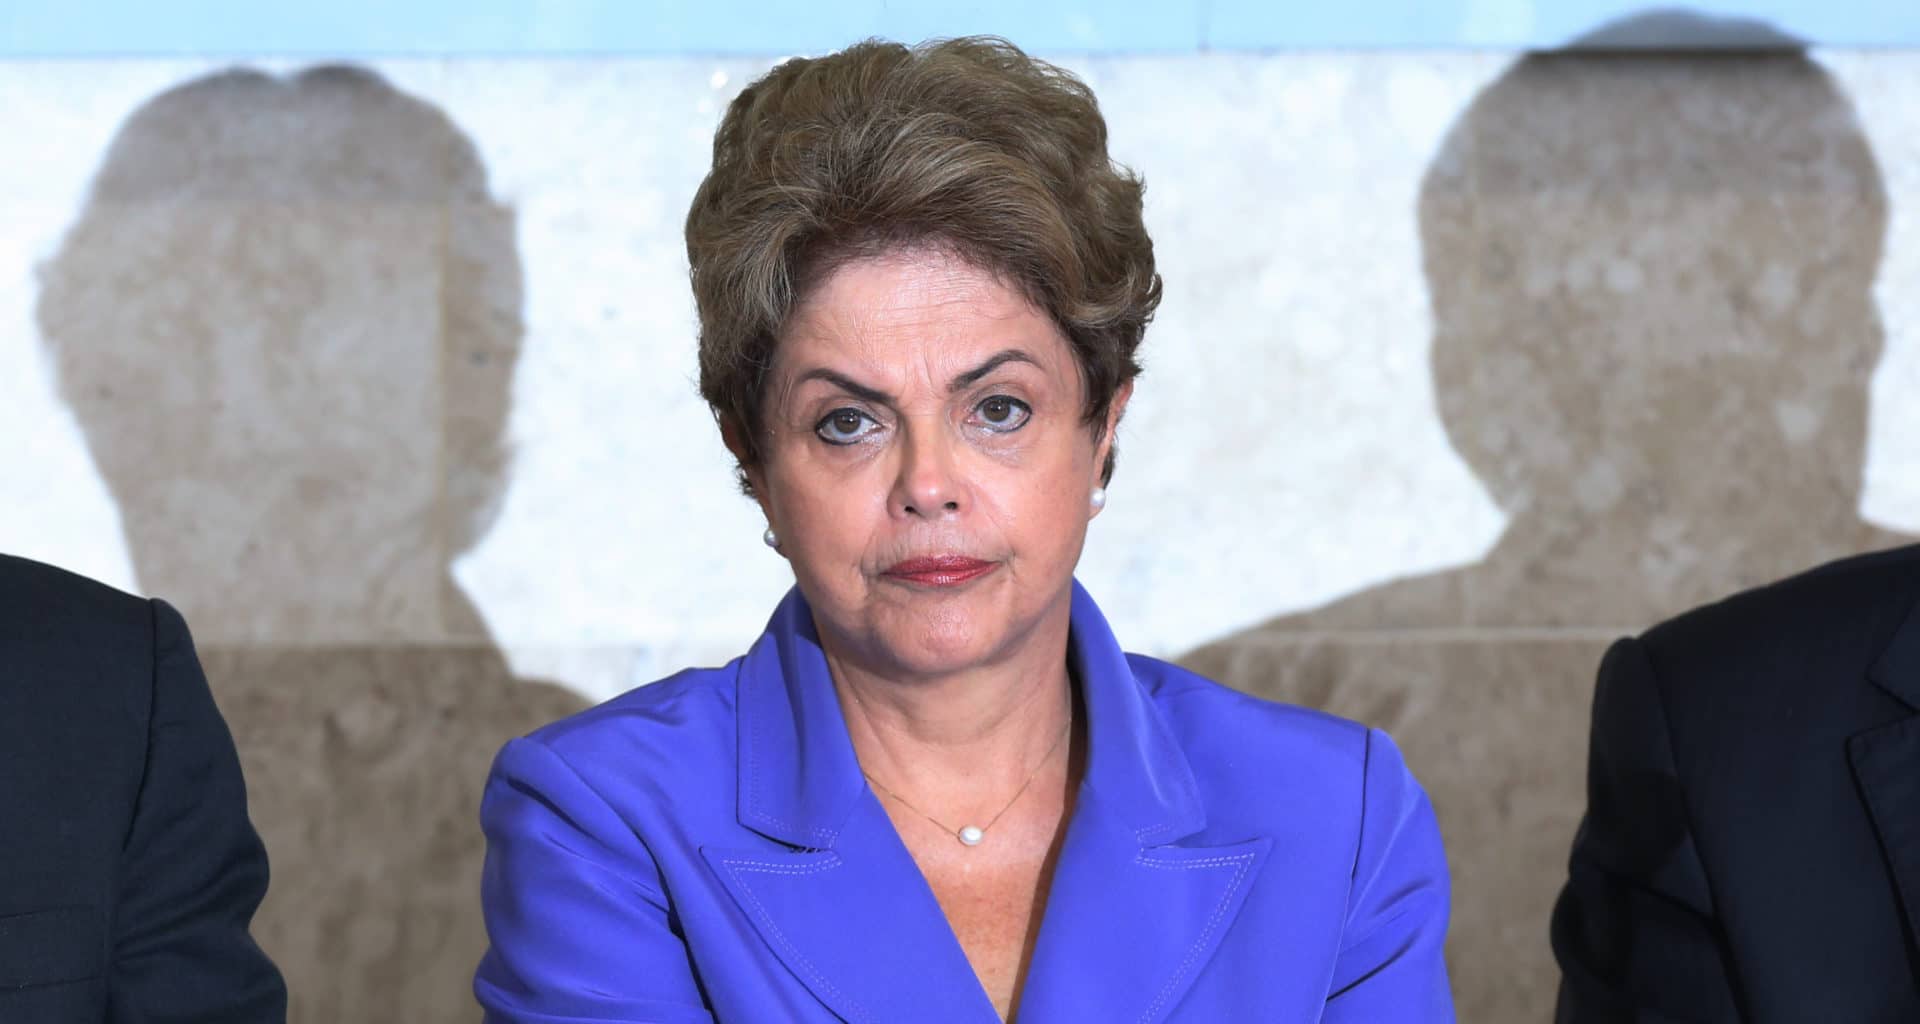 Como a Crise Política no Brasil pode ser abordada nos vestibulares?